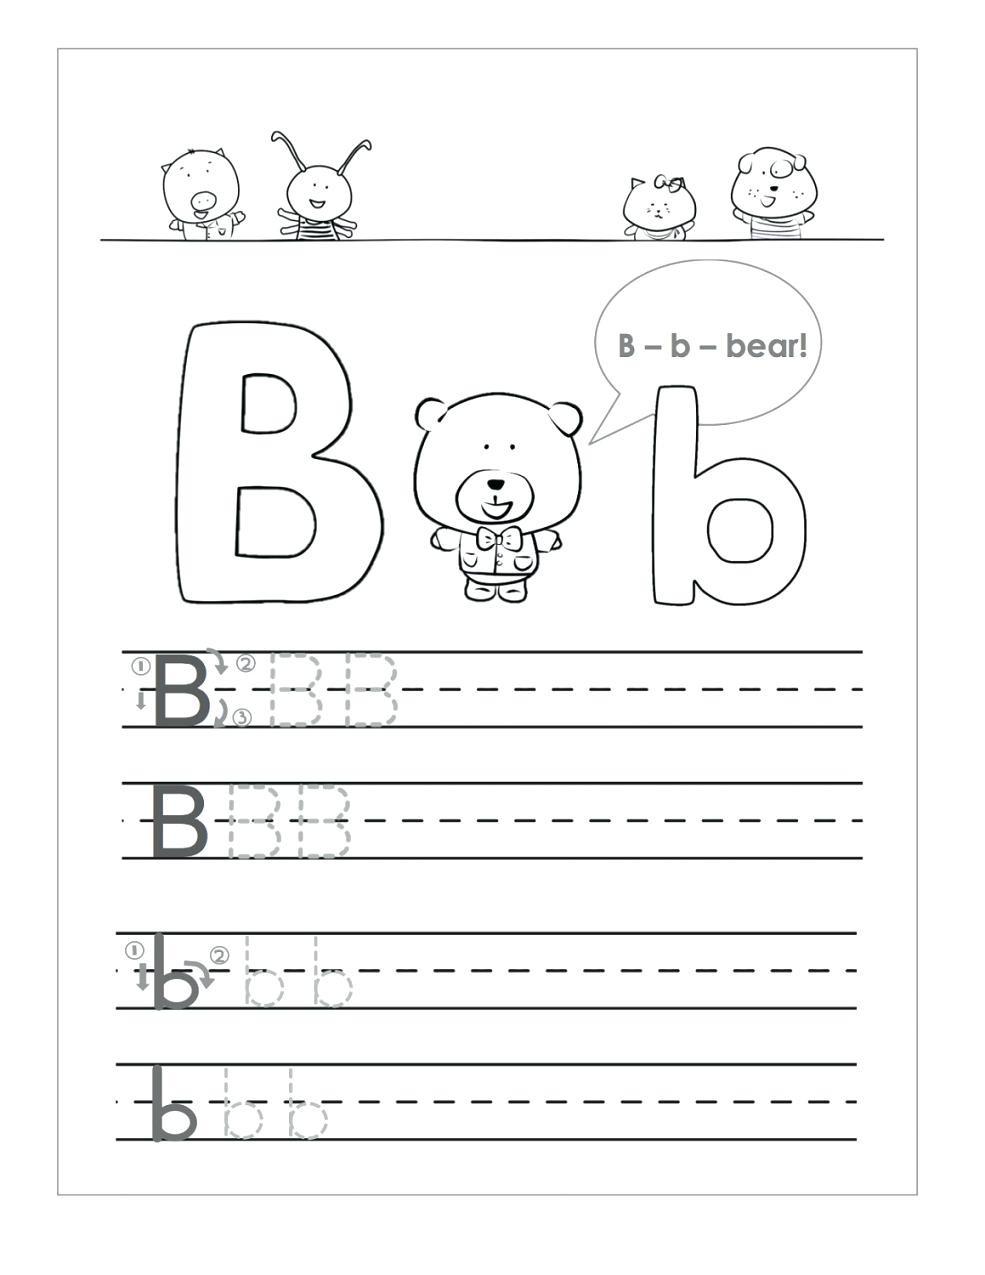 Preschool Worksheets Letter B Letter B Worksheets to Printable Letter B Worksheets